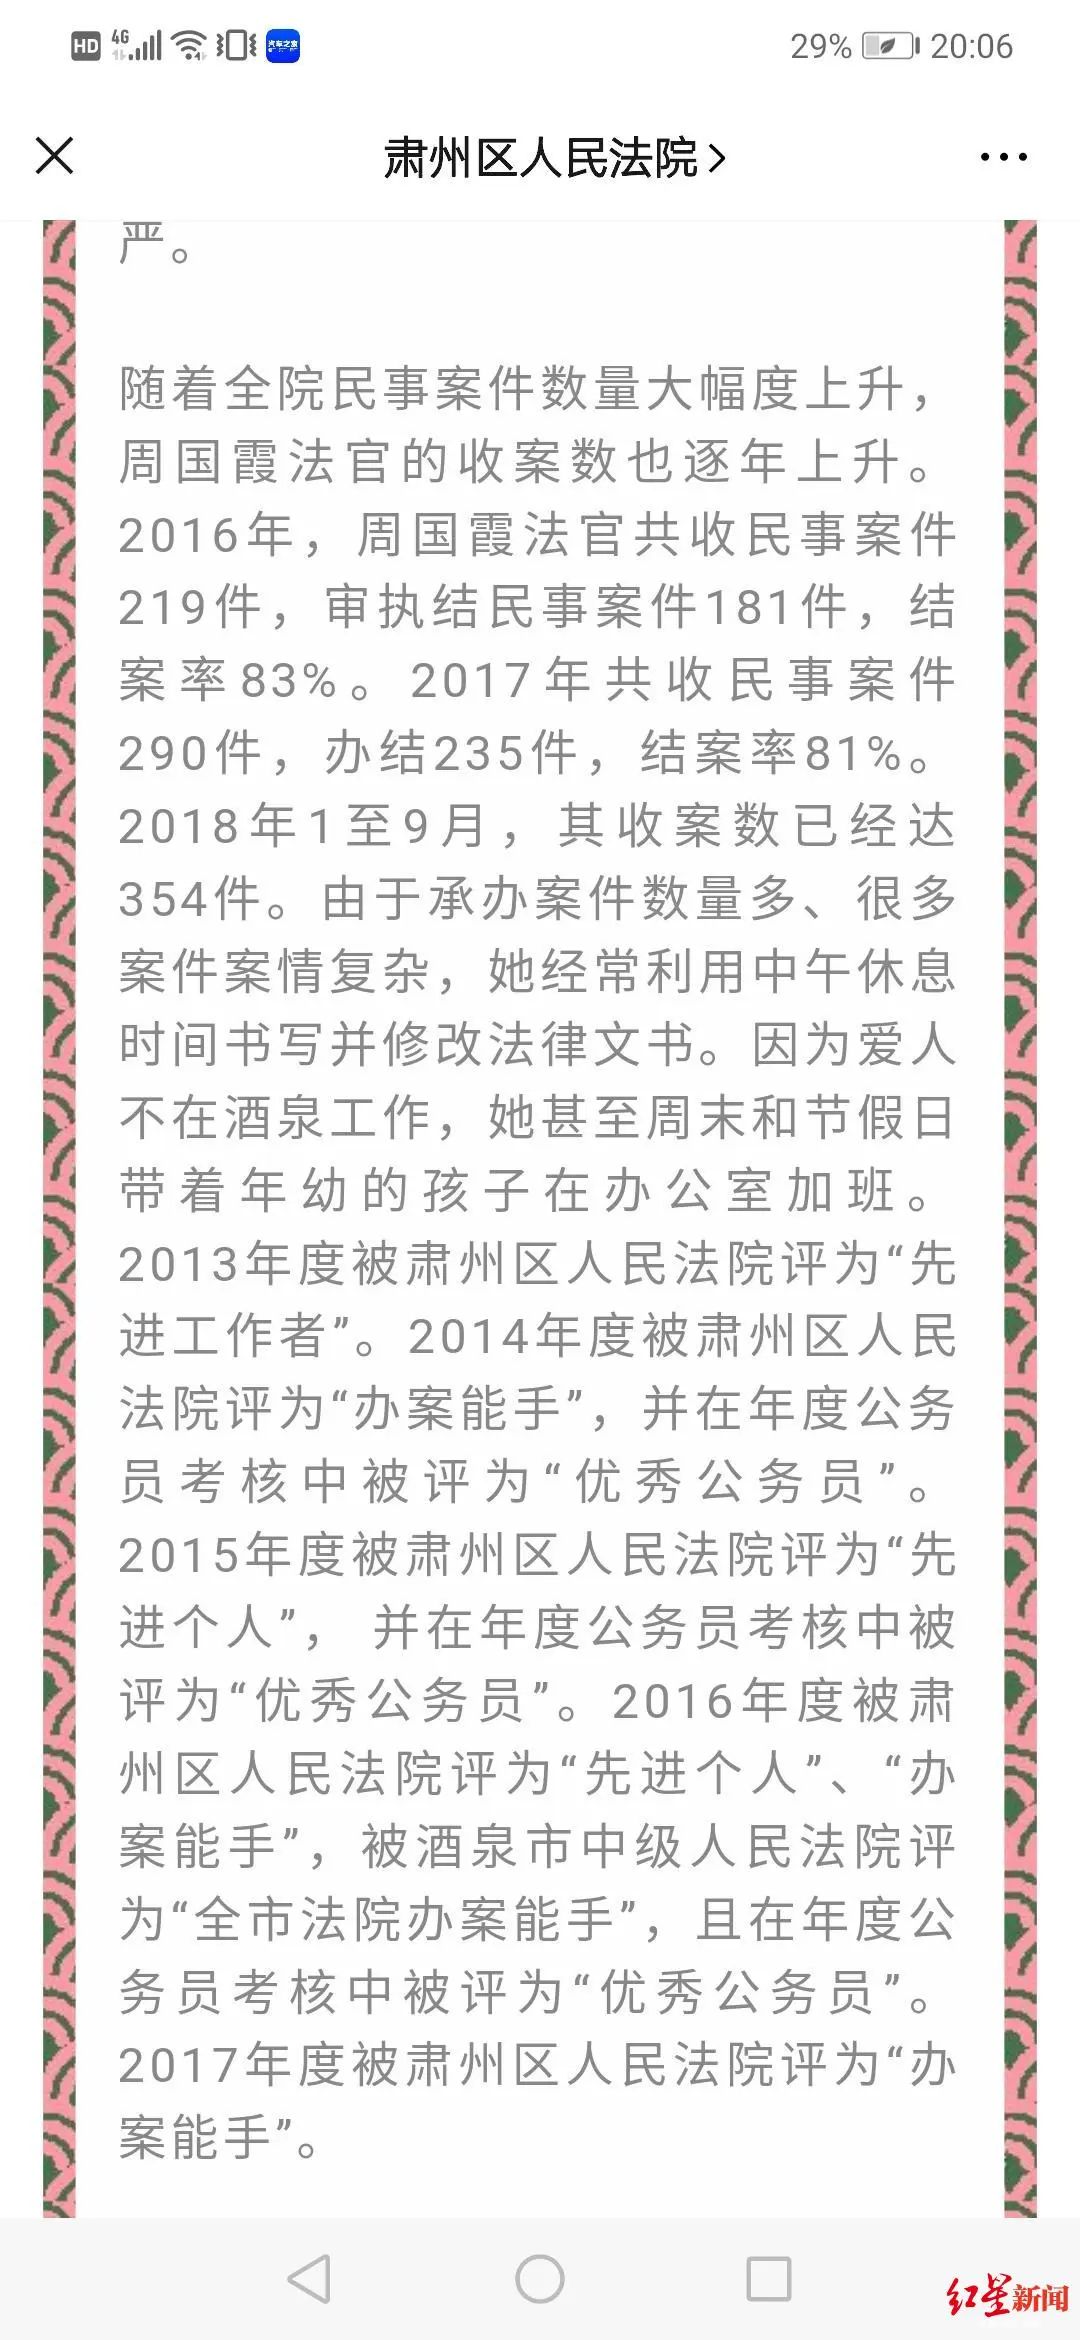 肃州区人民法院微信公众号发布的信息，介绍周国霞办案情况